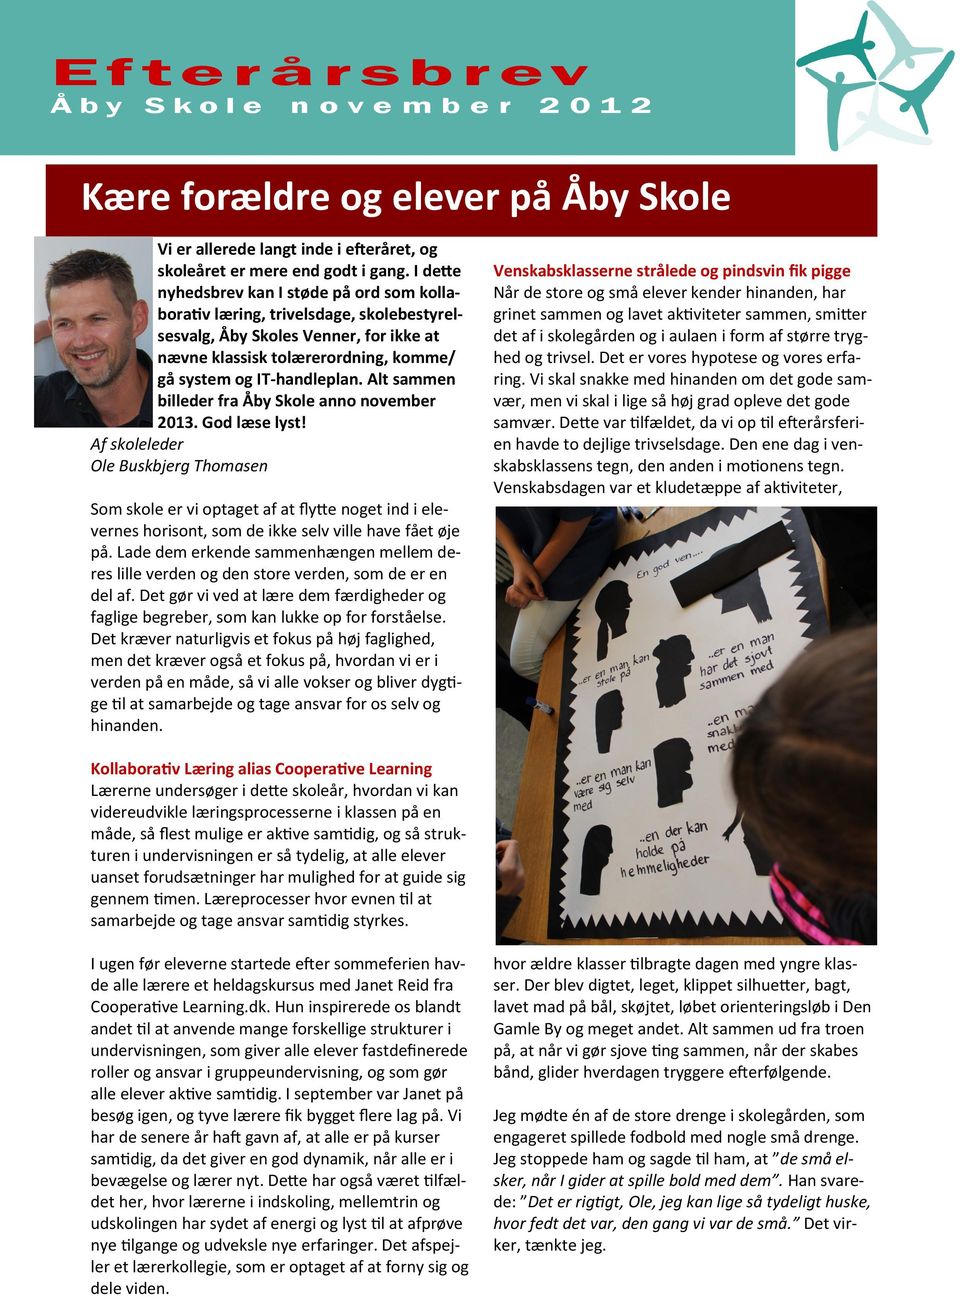 Alt sammen billeder fra Åby Skole anno november 2013. God læse lyst!